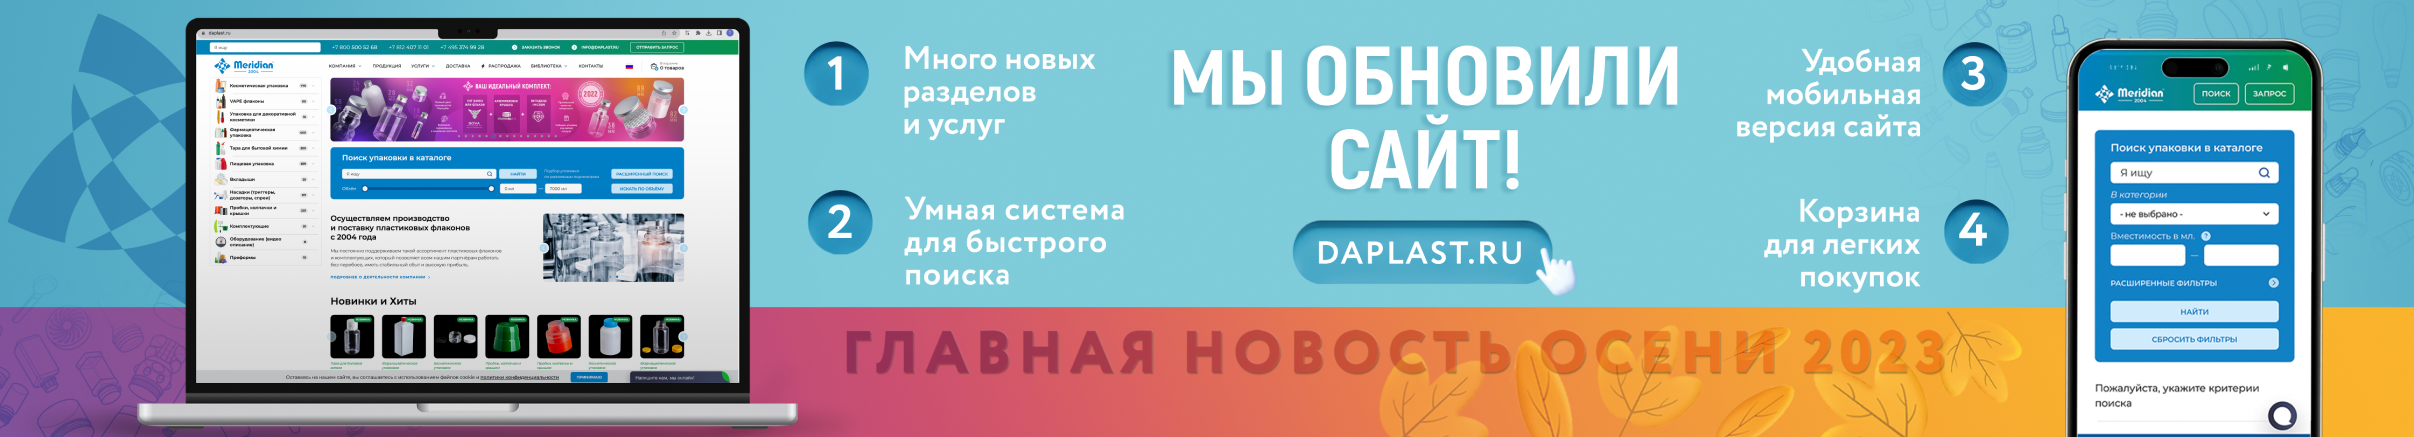 Новый сайт daplast.ru